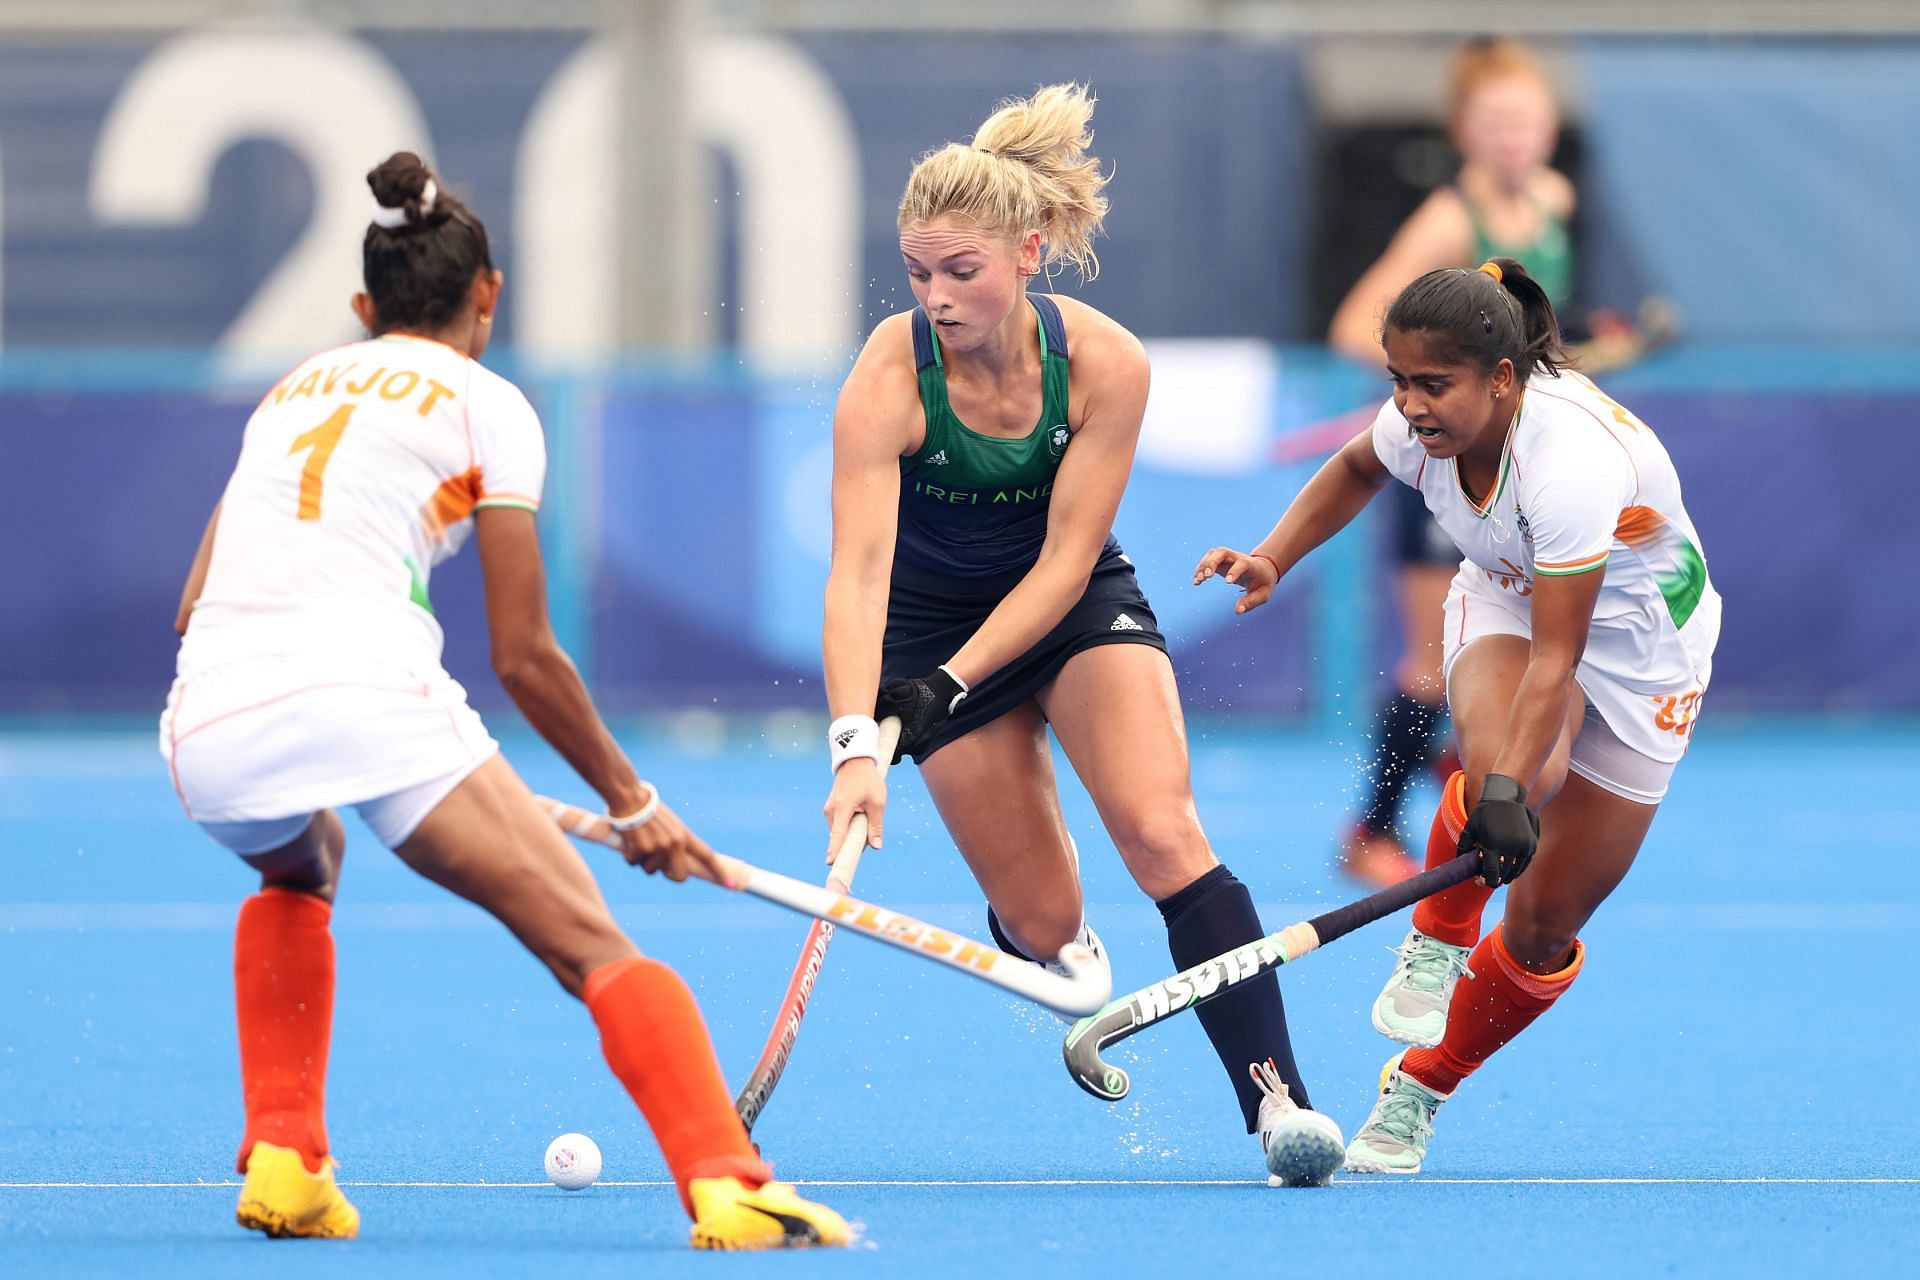 Ireland v India - Hockey - Olympics: Day 7